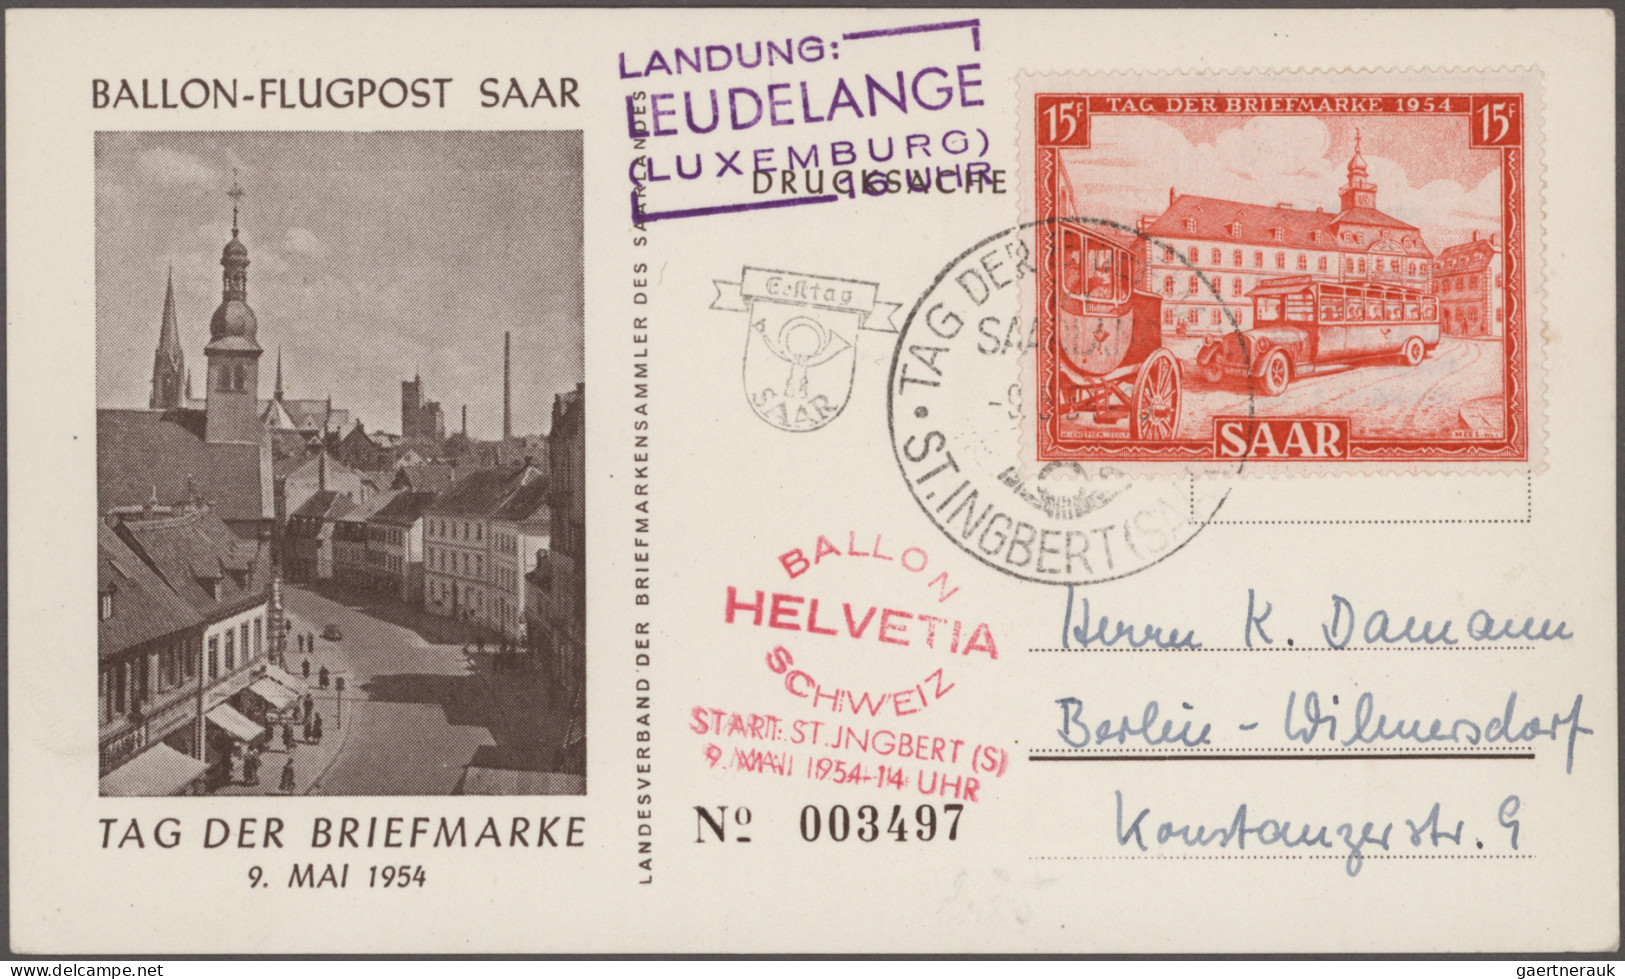 Schweiz: 1896/1960 (ca), Hochinteressante Sammlung Flug- und Ballonpost in Leuch